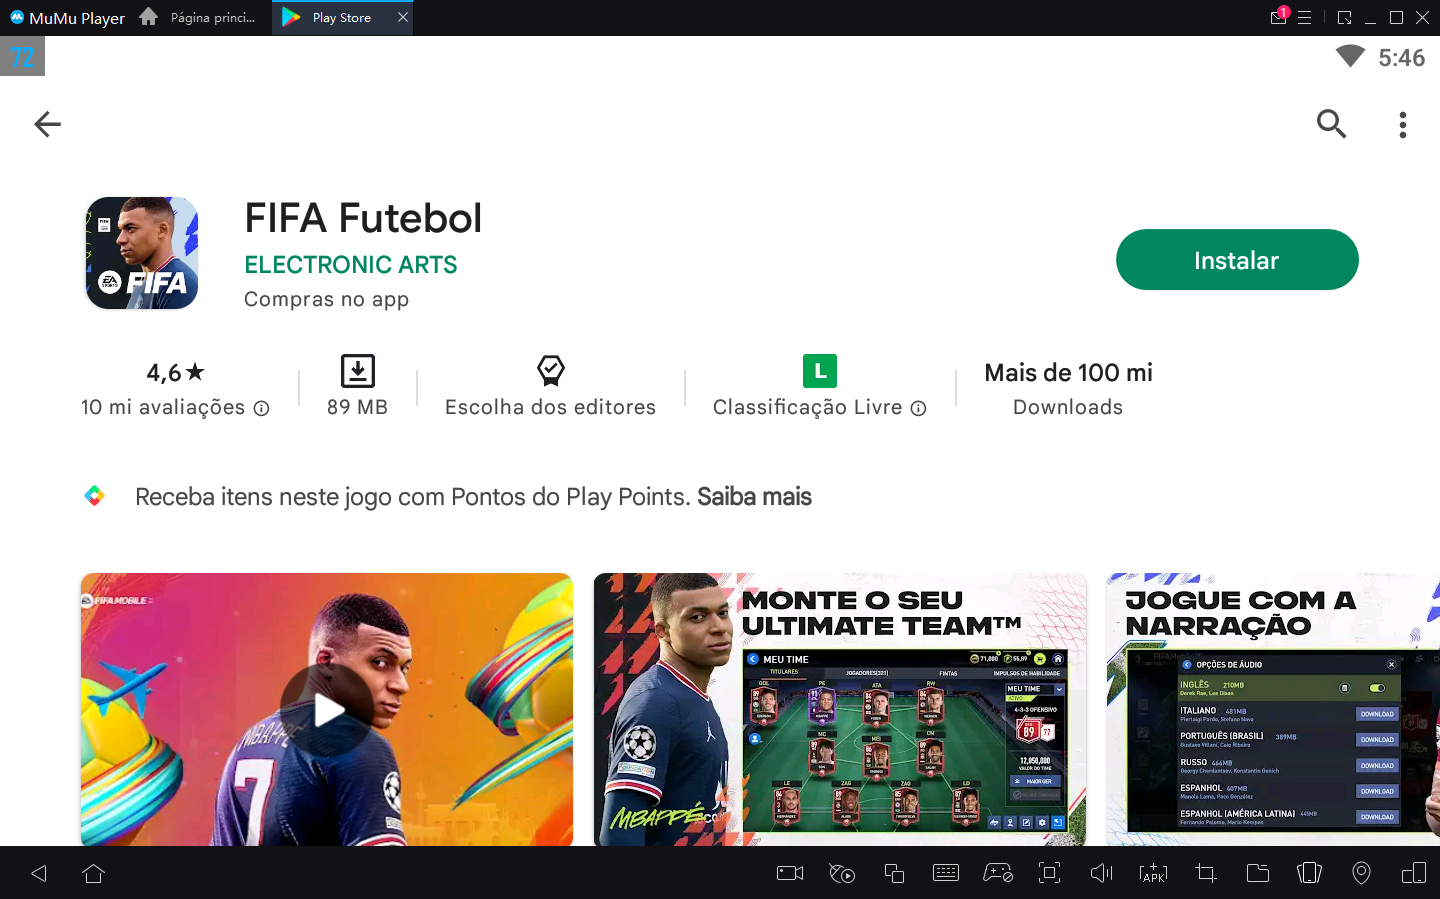 Como jogar FIFA Futebol no PC com Emulador Android